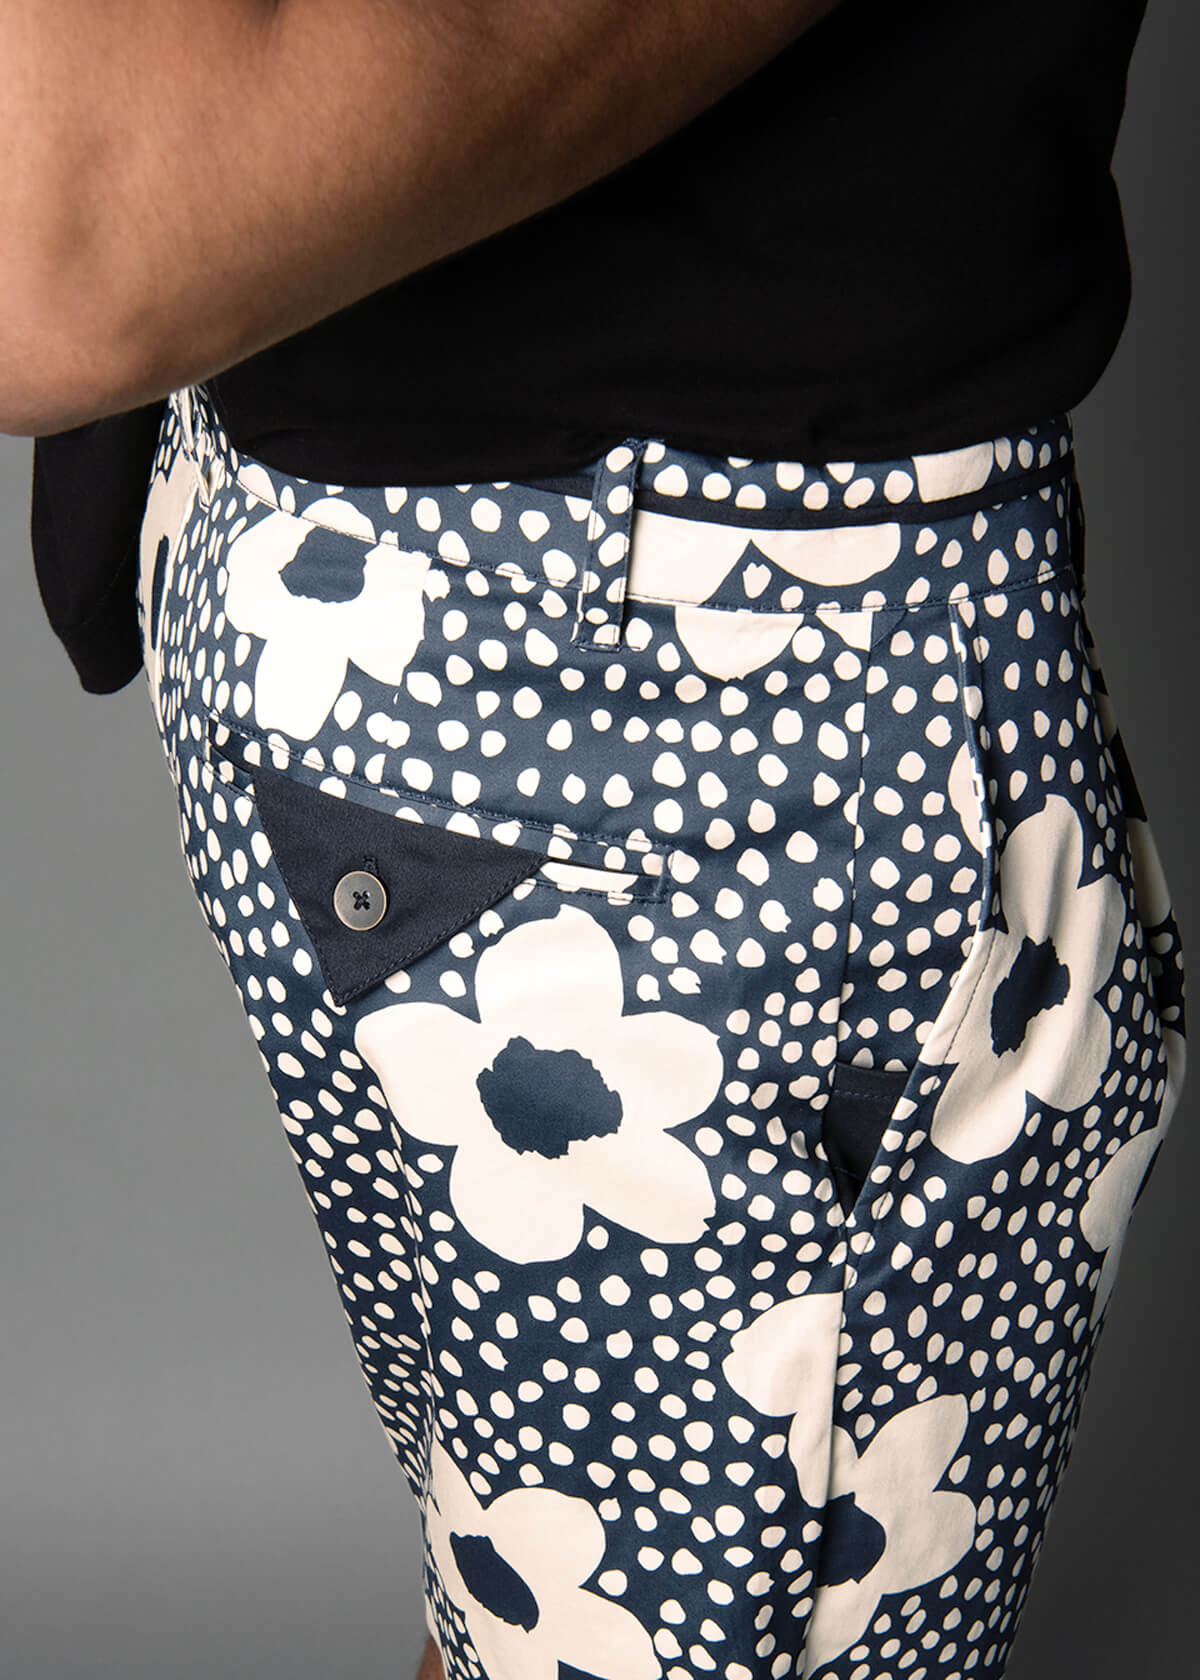 floral print cotton shorts for men